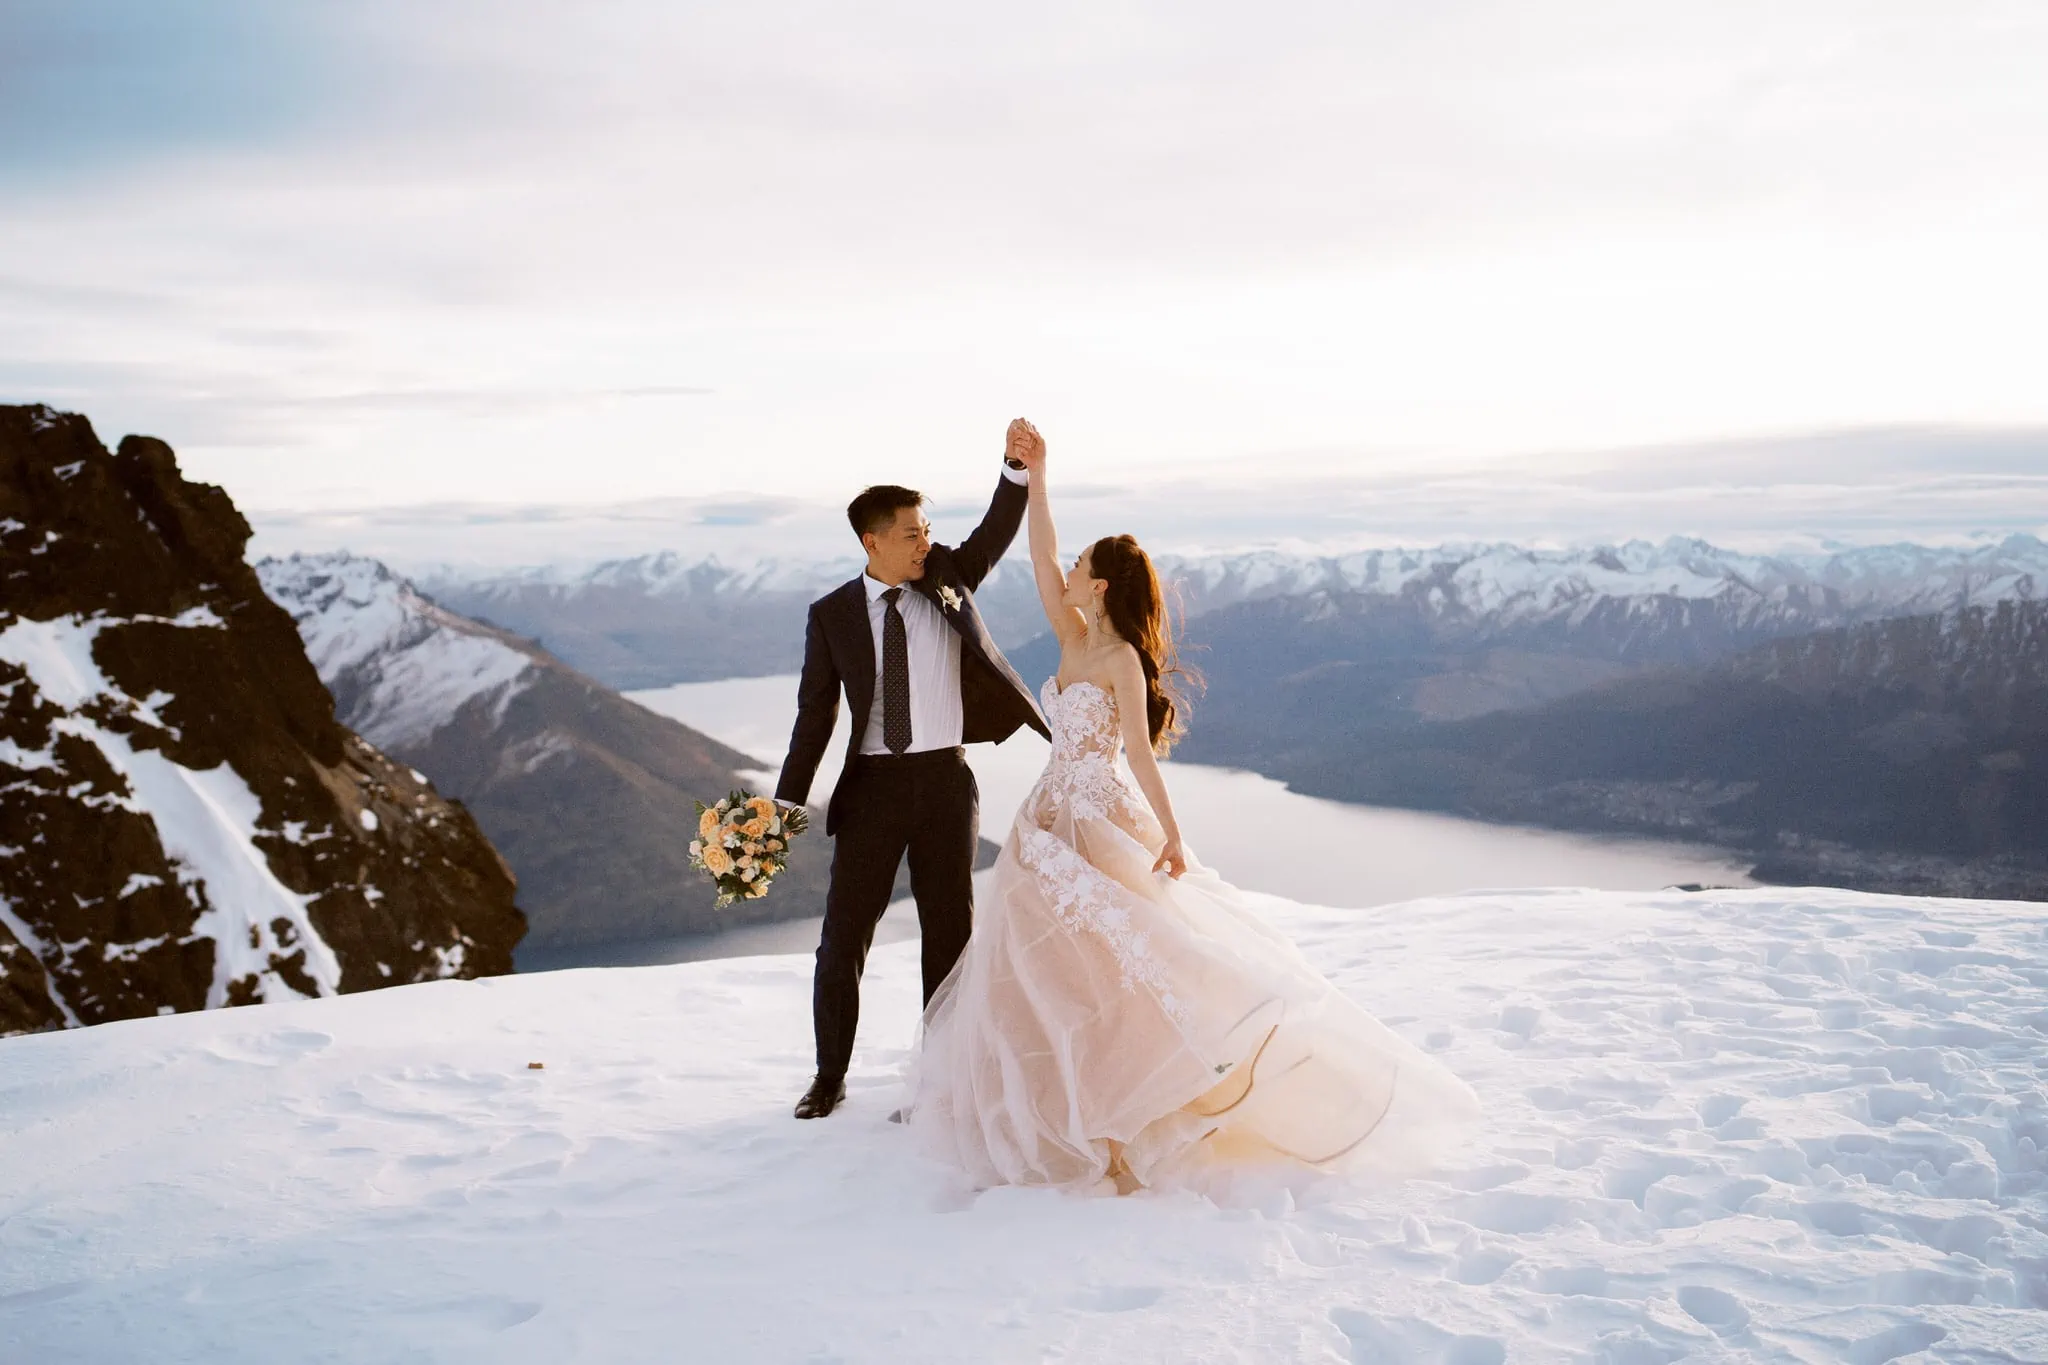 queenstown remarkables snow winter heli wedding elopement prewedding shoot photographer